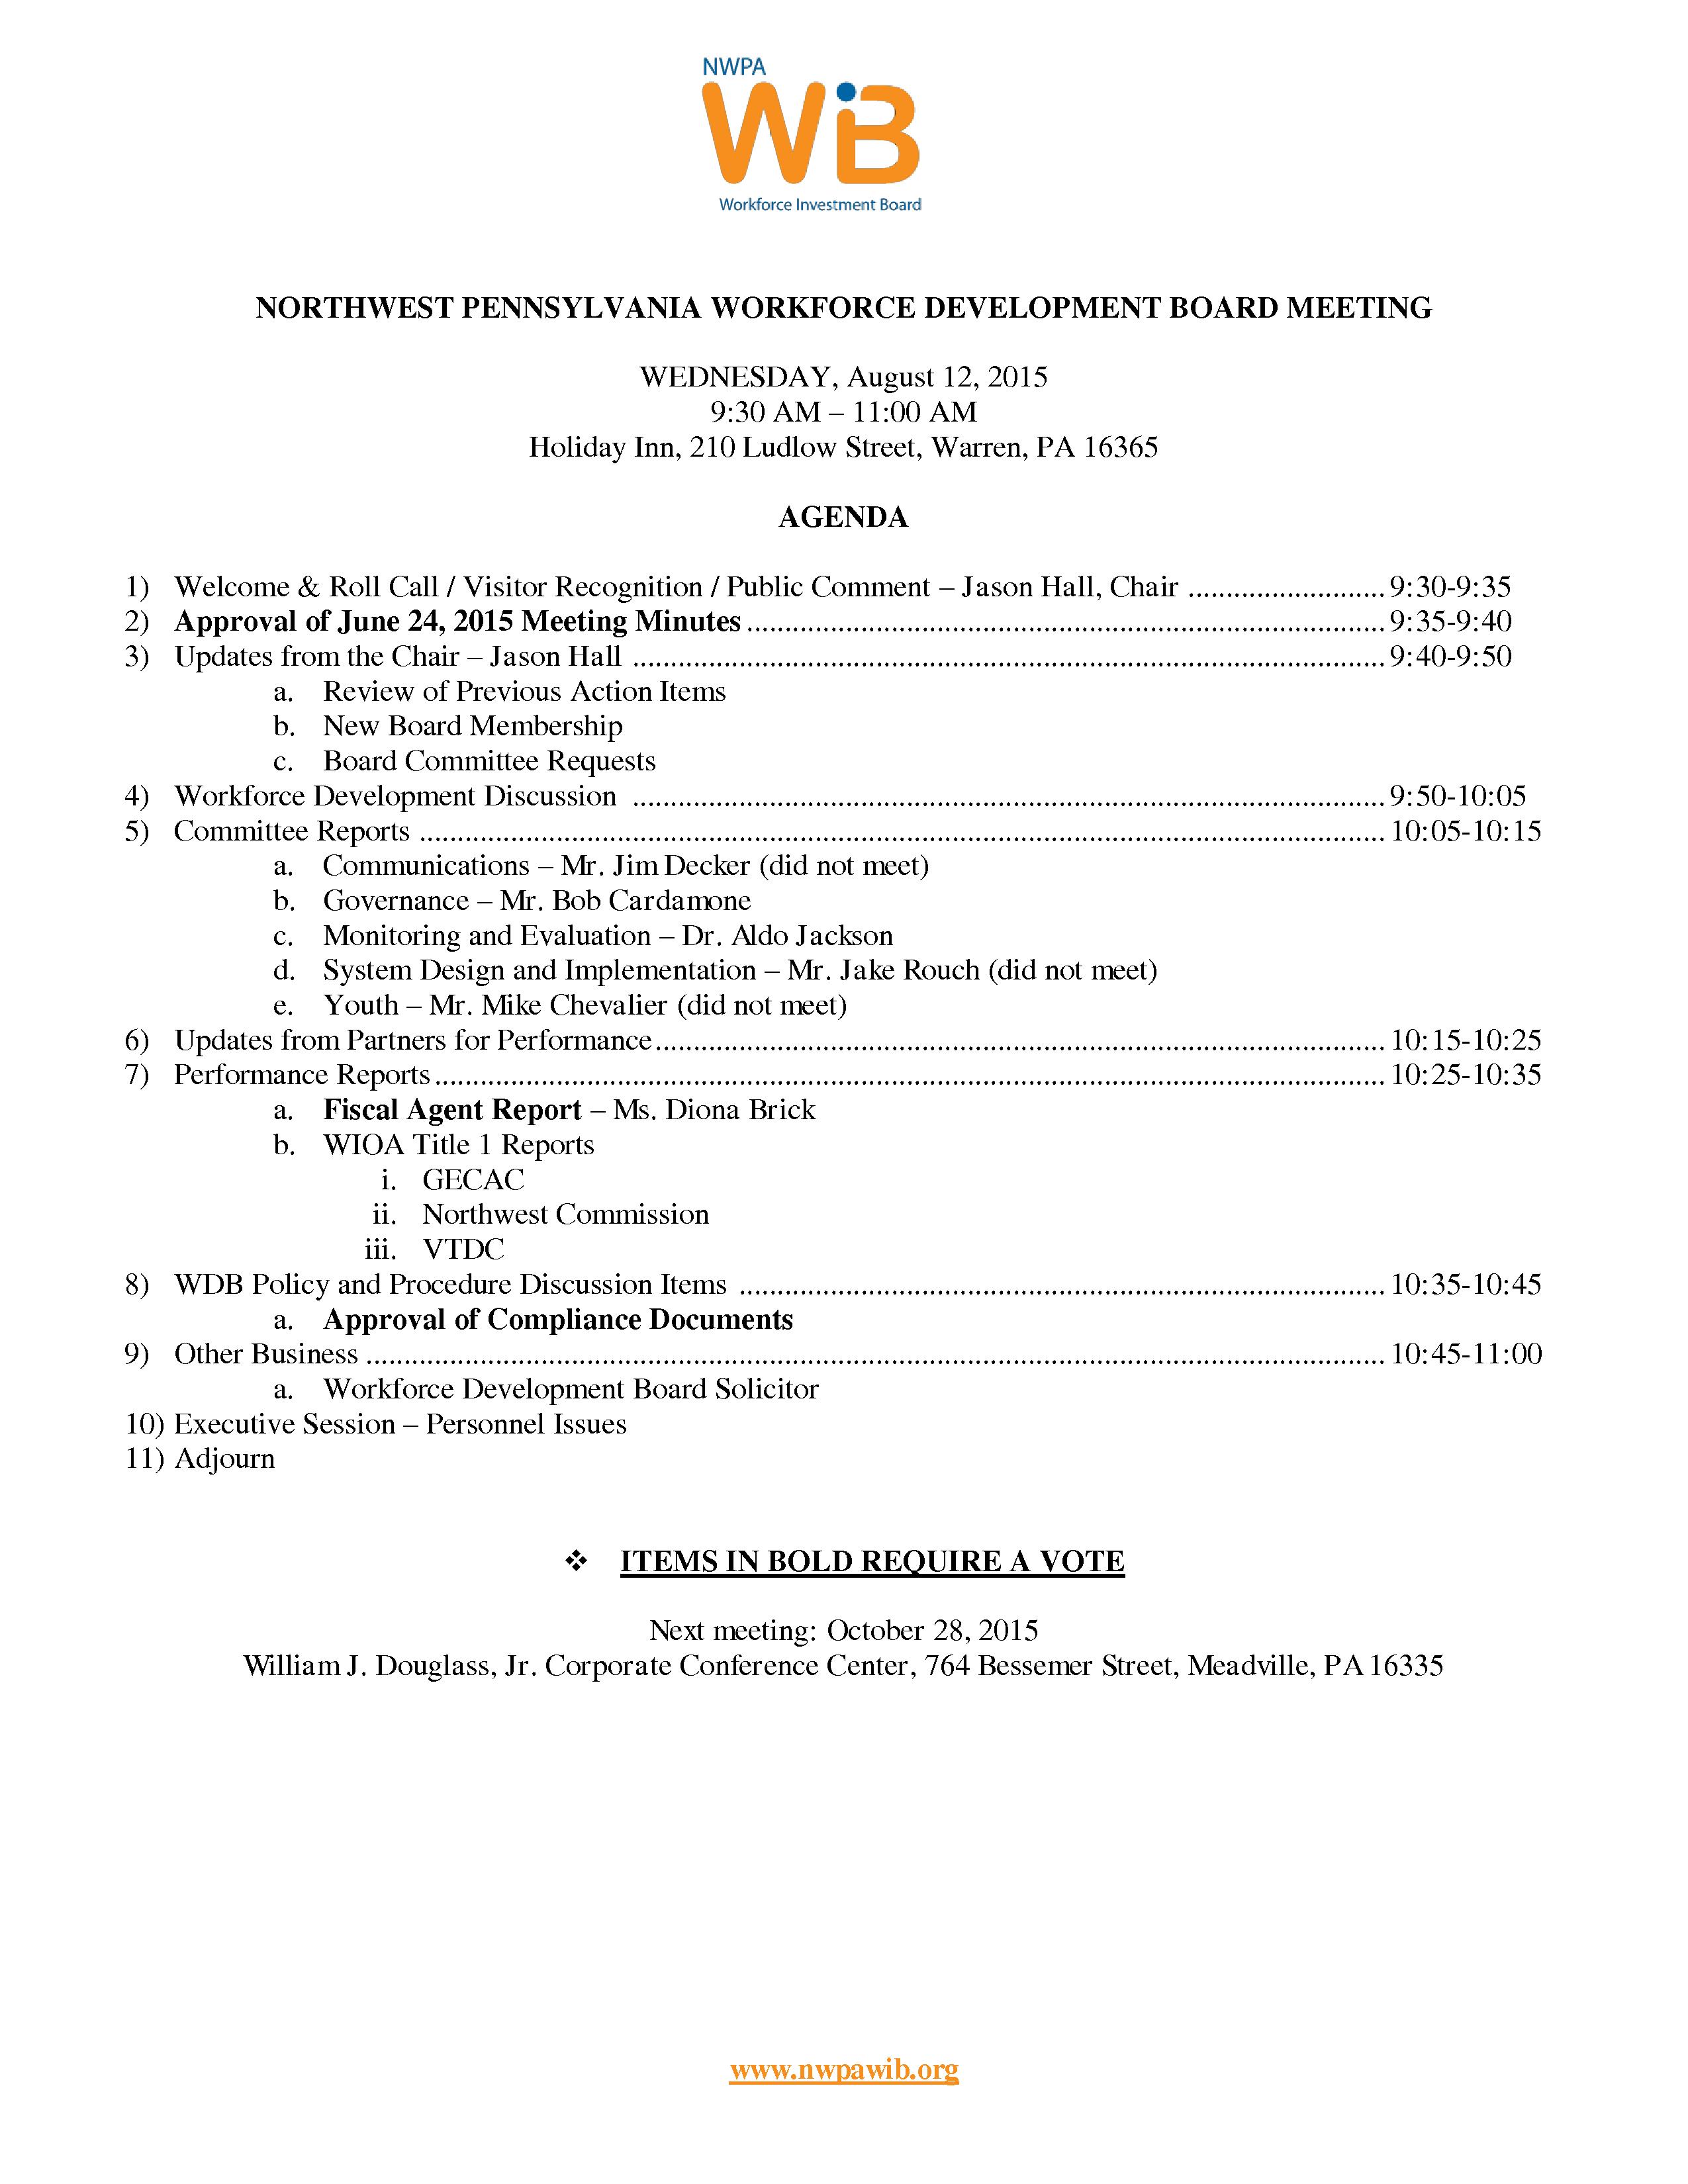 NWPA WDB Agenda 08-12-15